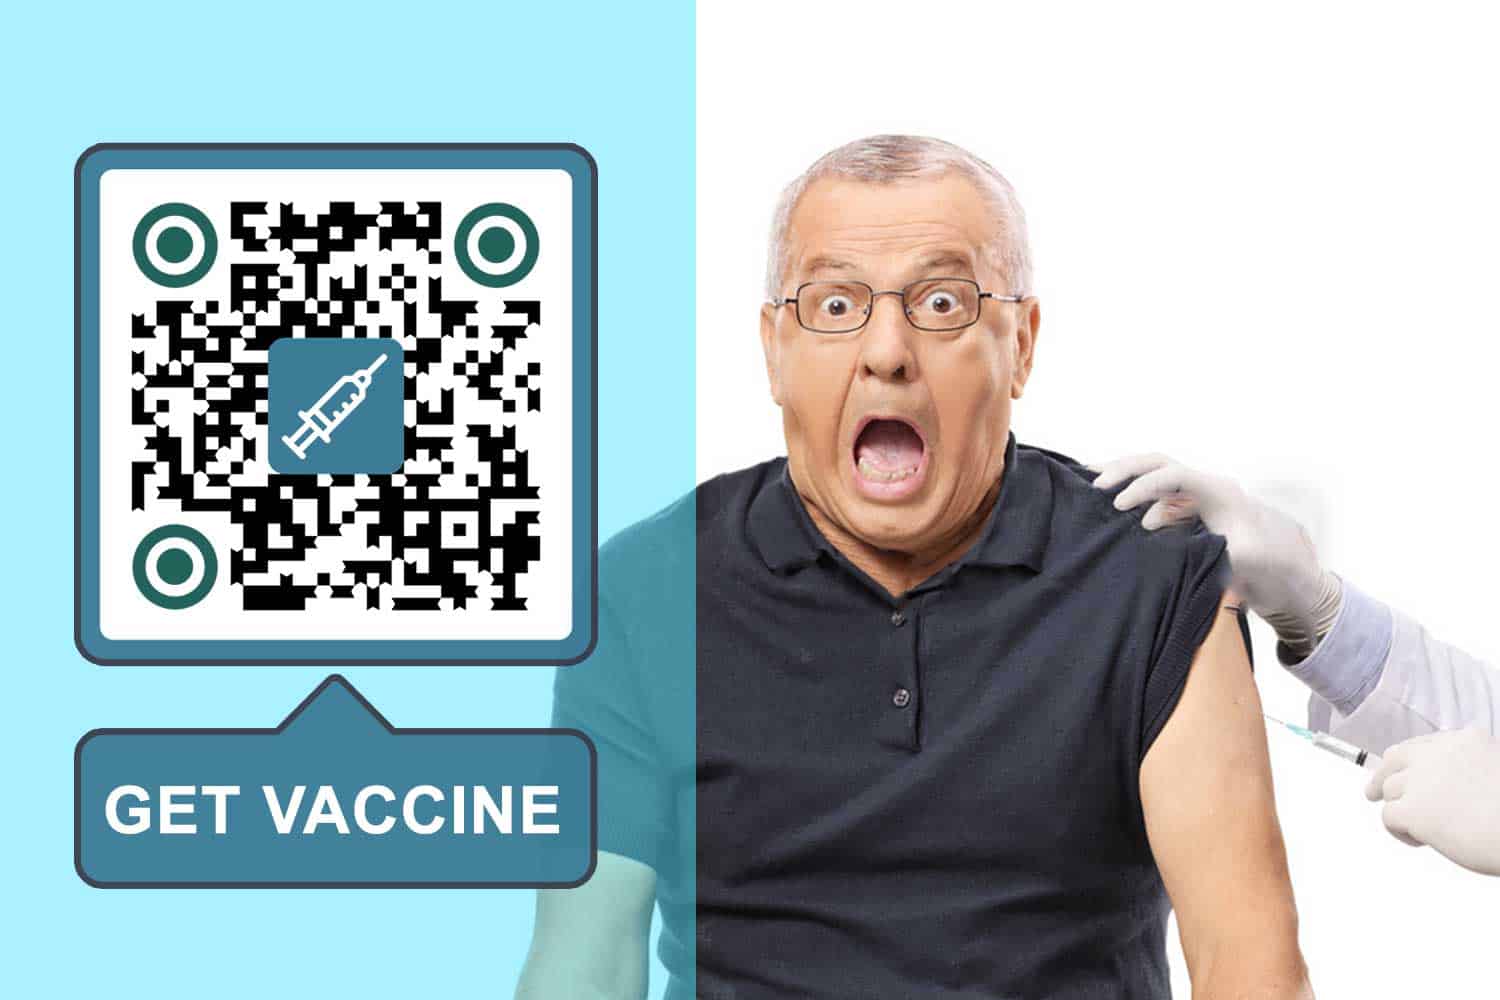 Створіть QR-код для вакцини